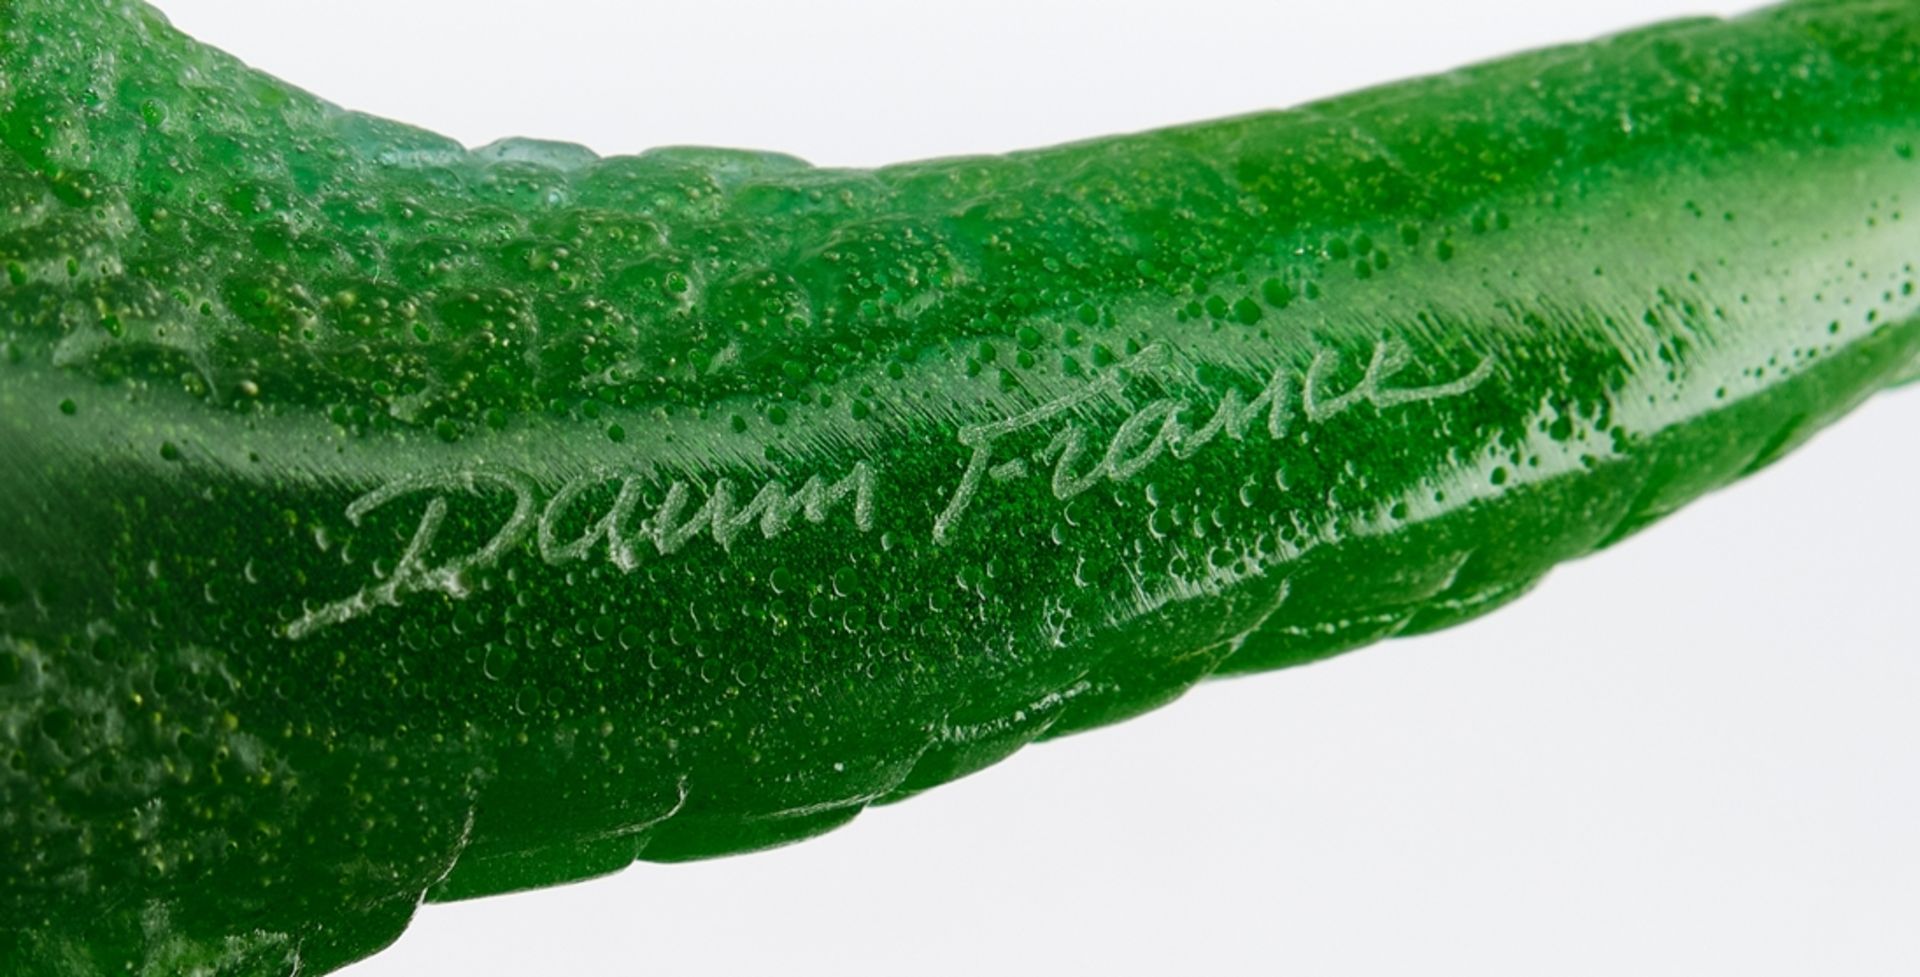 Daum, "Alligator", Glasfigur, Pâte de verre, grün, umseitig bezeichnet Daum France, 10 cm hoch, 51. - Bild 6 aus 6